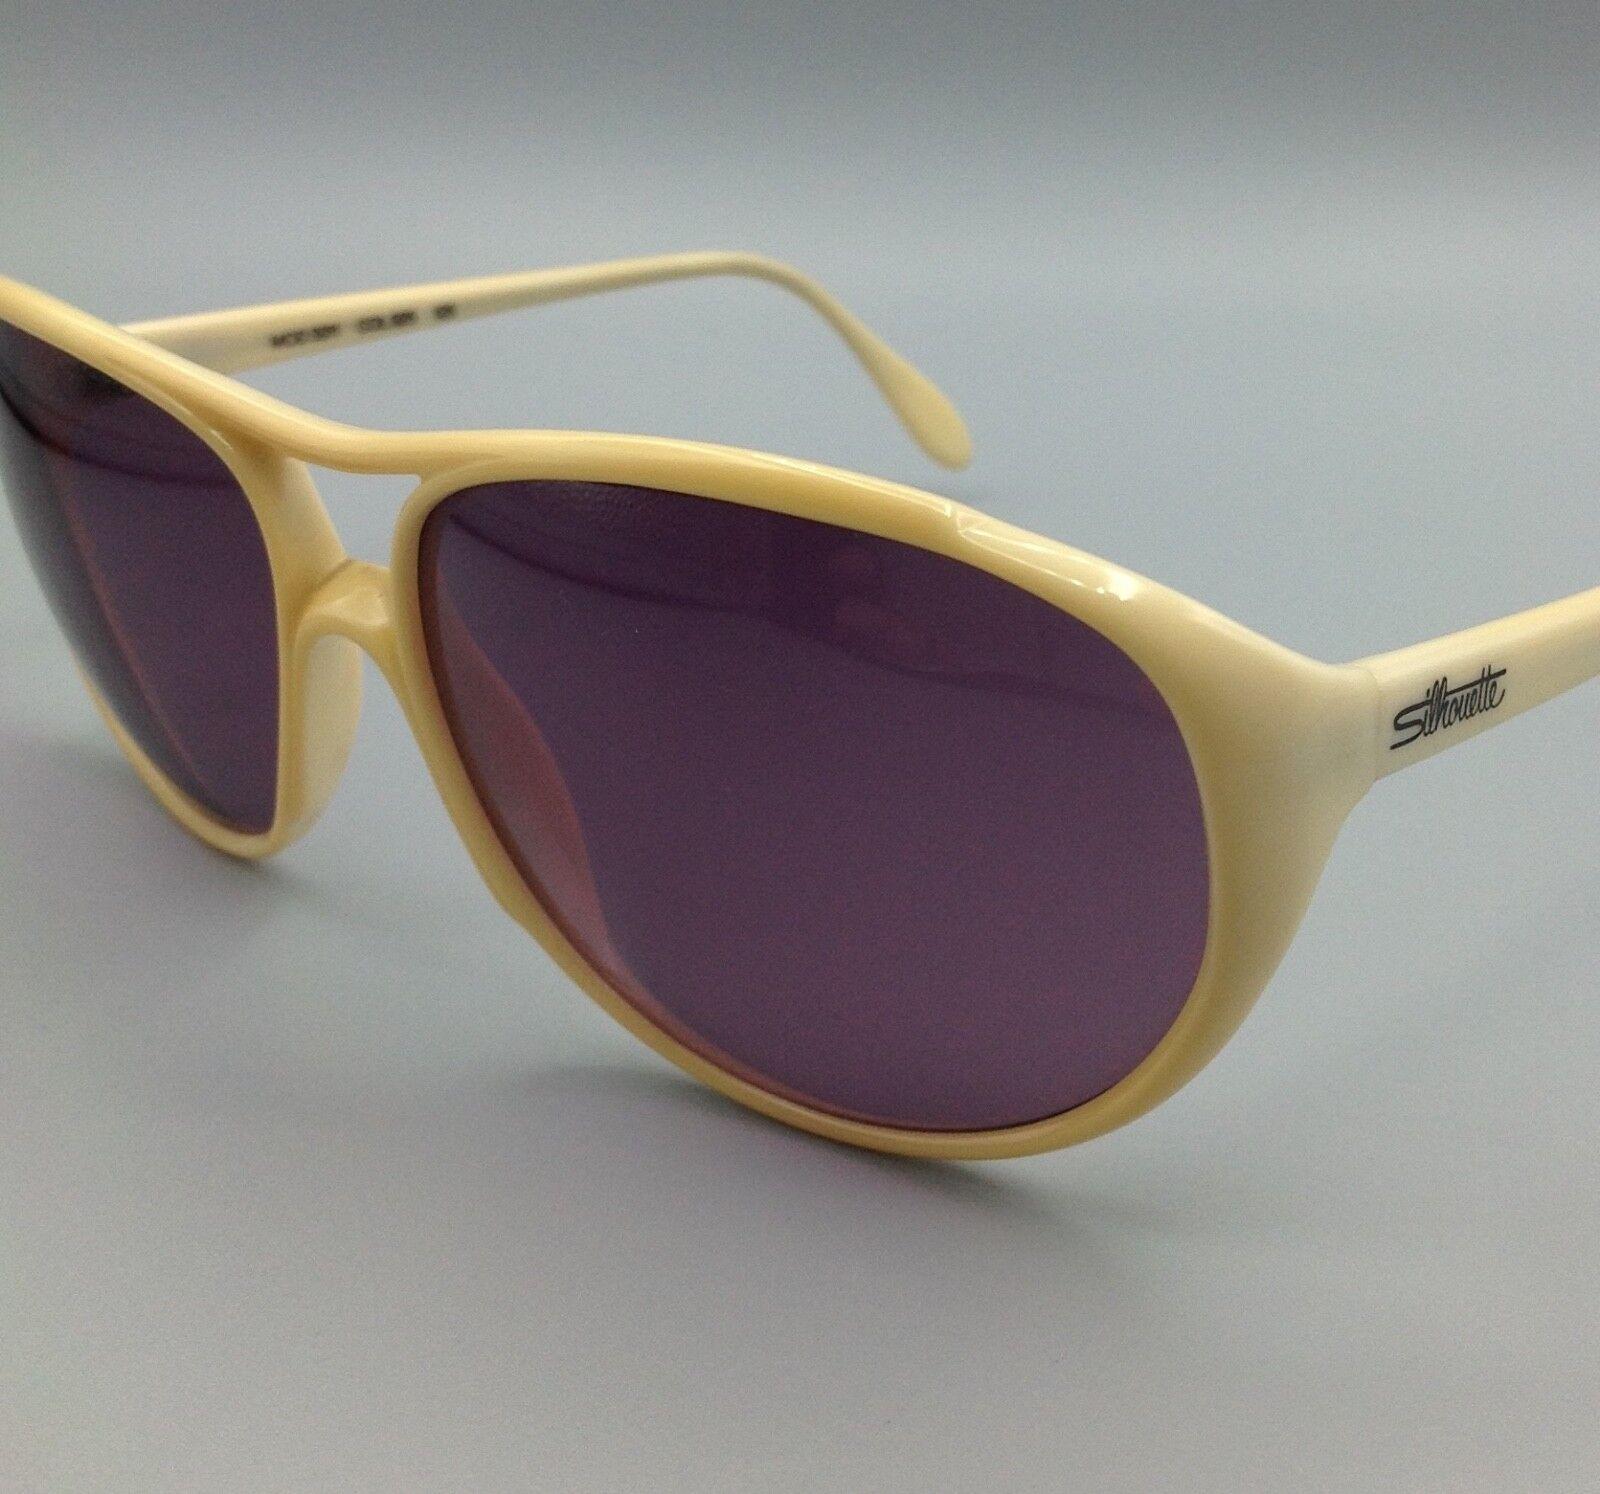 SILHOUETTE occhiali sole Austria mod.3011 c025 vintage SUNGLASSES SONNENBRILLEN